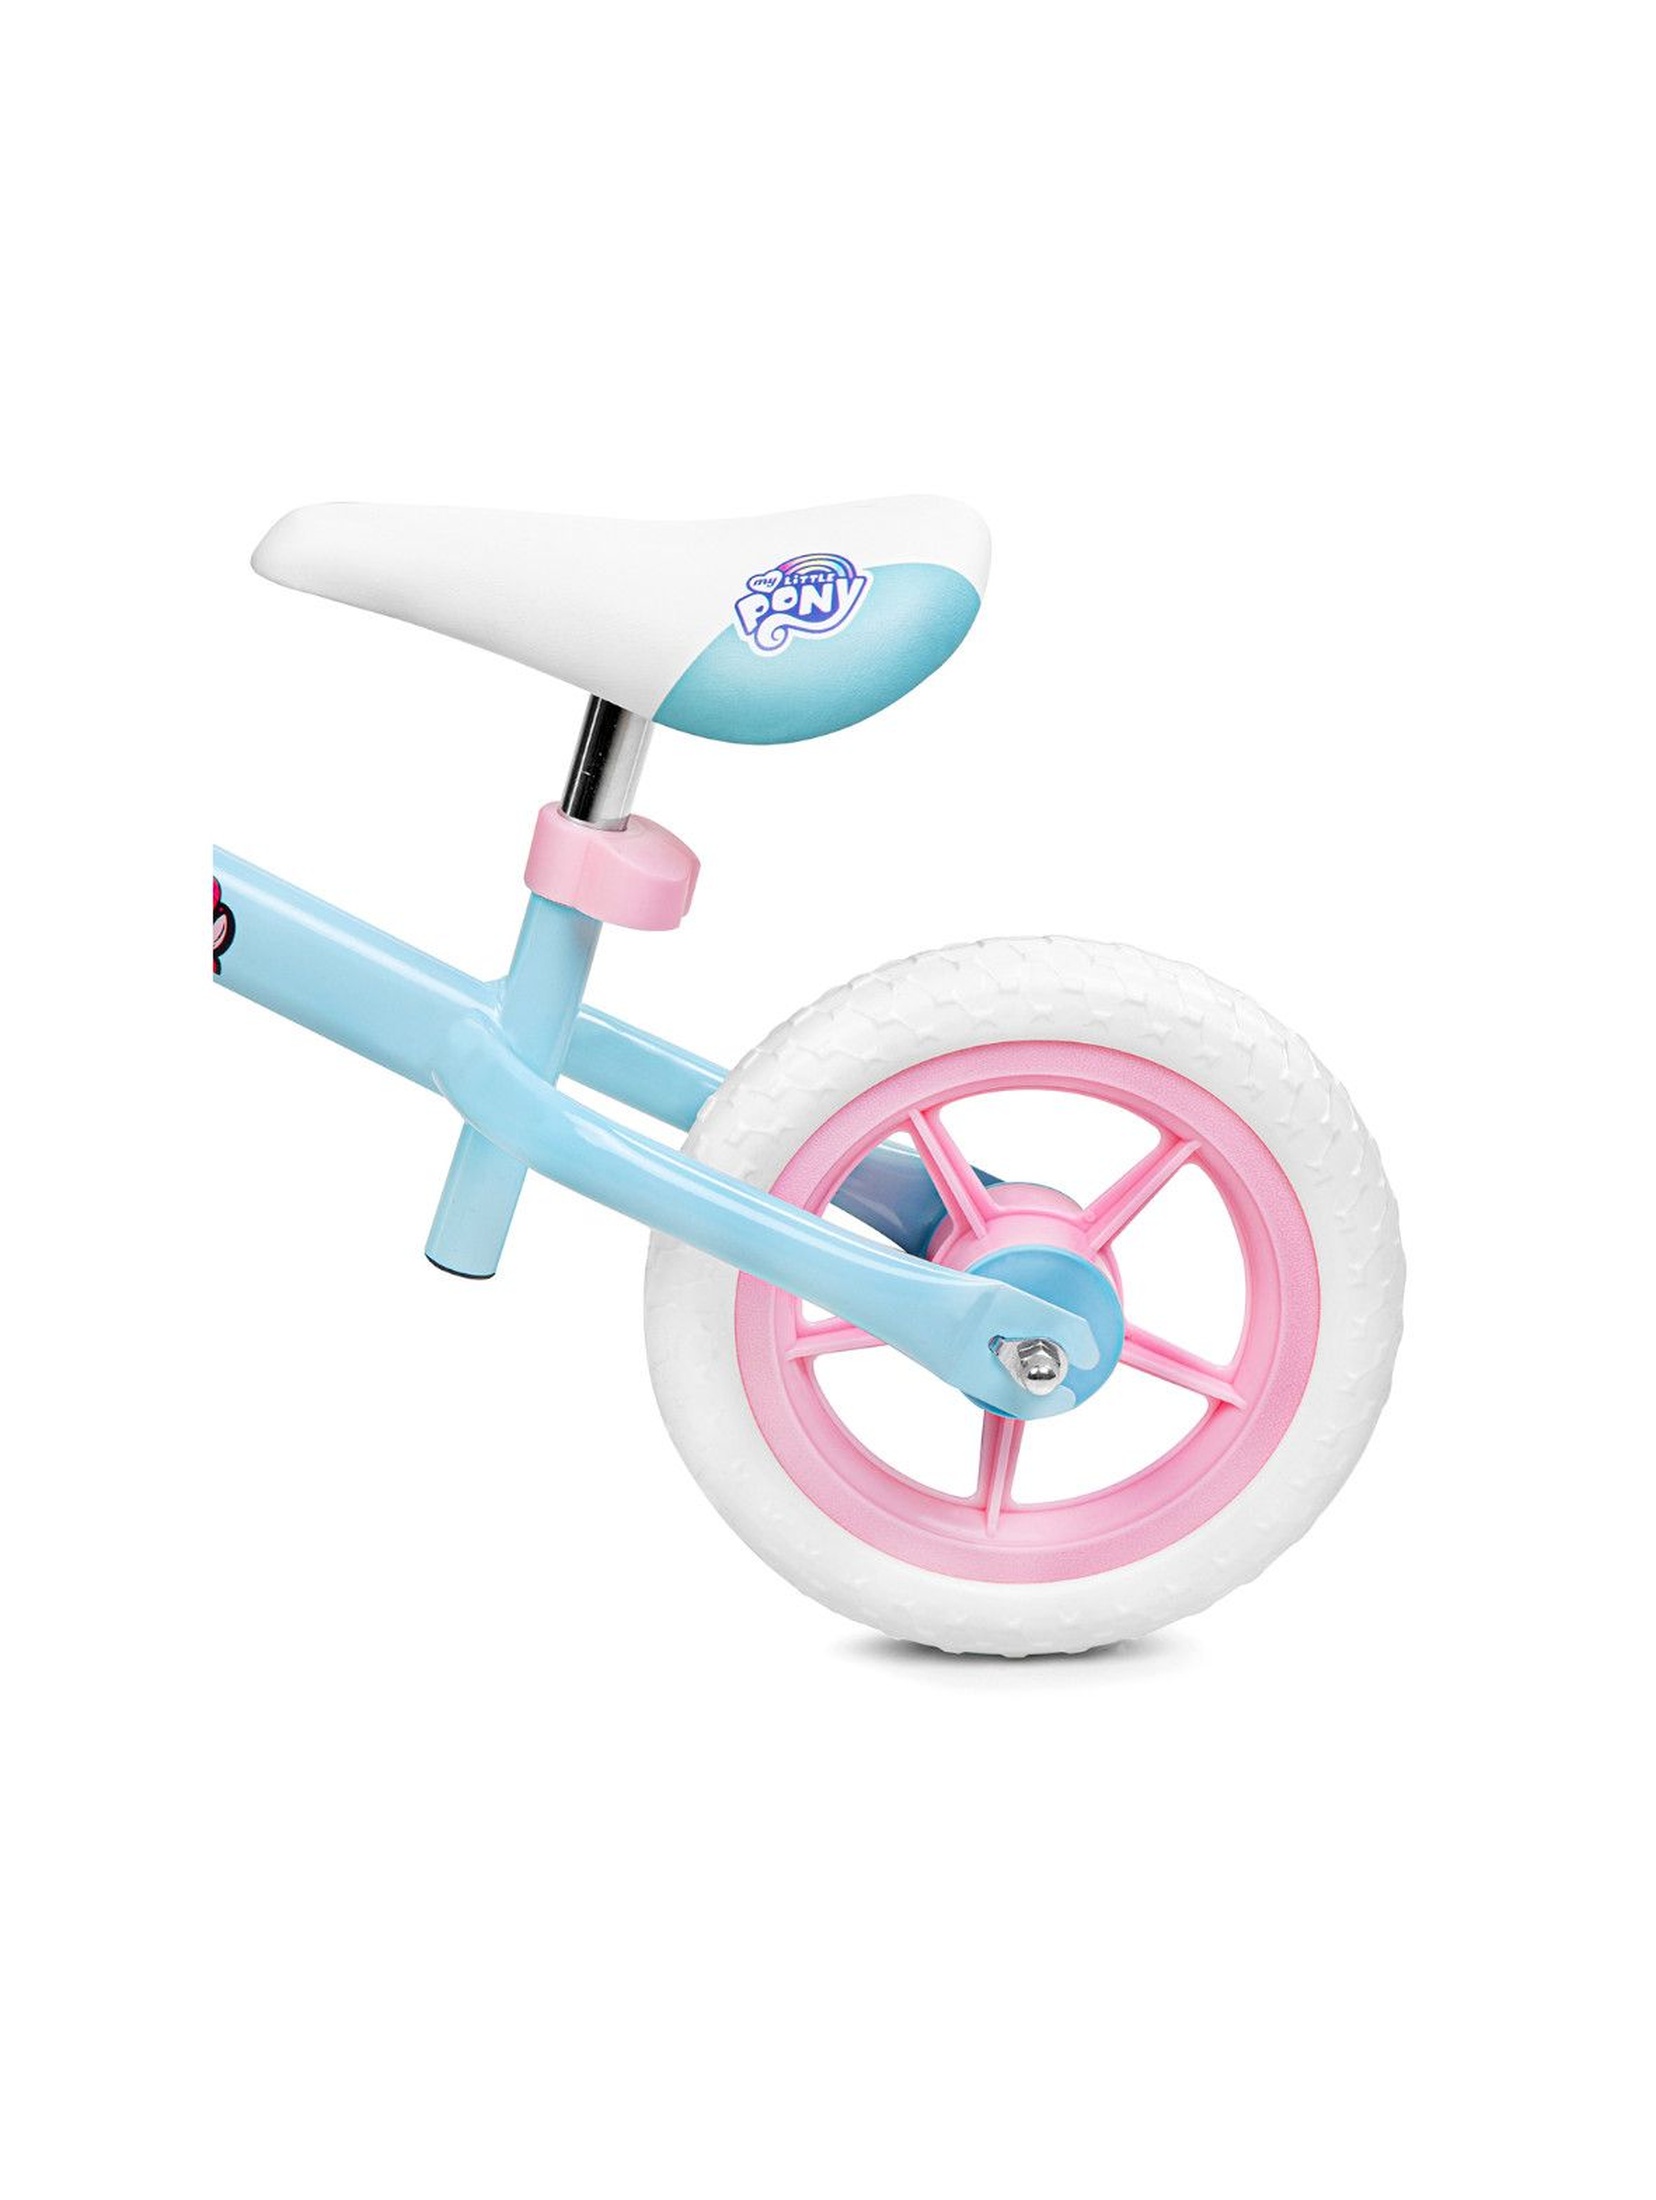 Rowerek biegowy ELFIC My Little Pony - niebieski wiek 3-6lat